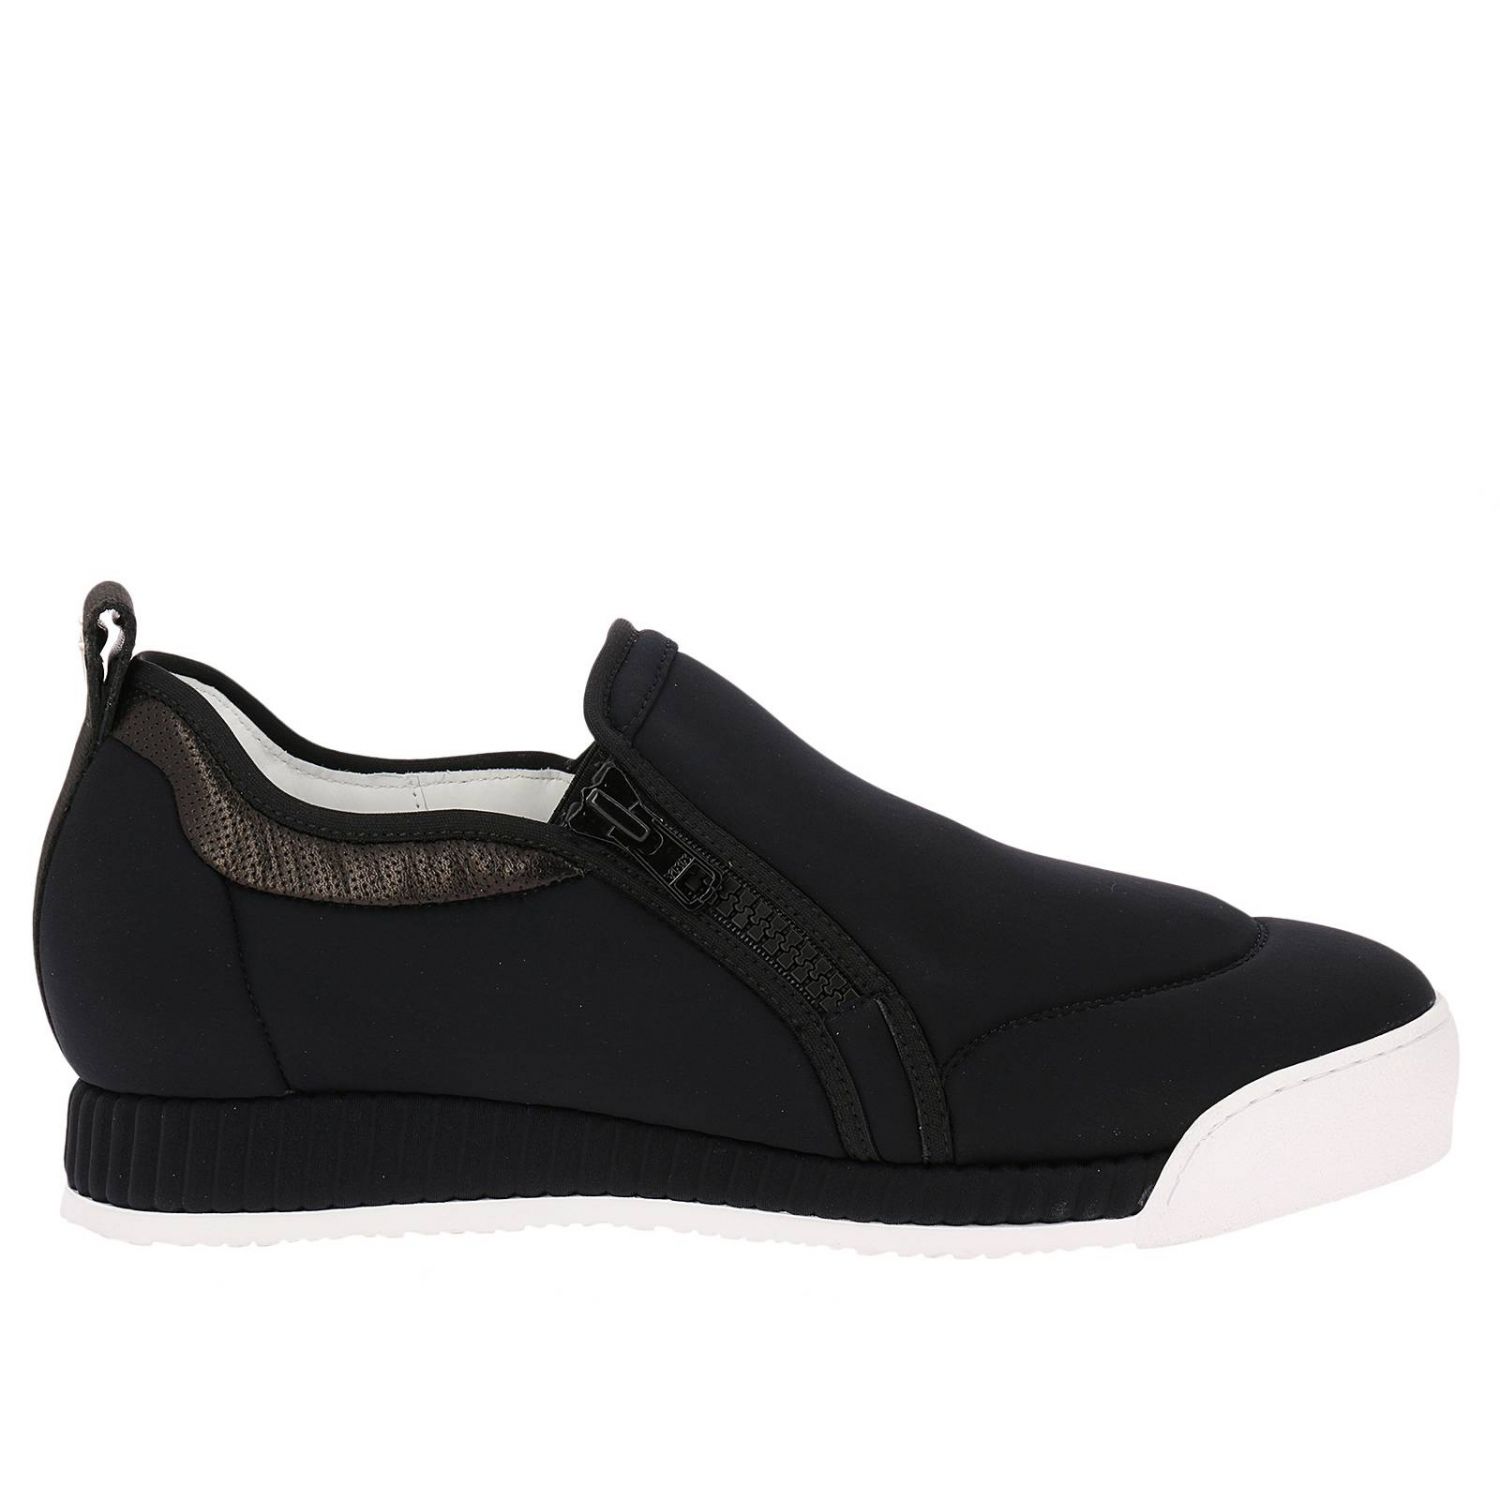 Paciotti 4Us Outlet: Shoes men - Black | Sneakers Paciotti 4Us GU2FTSC ...